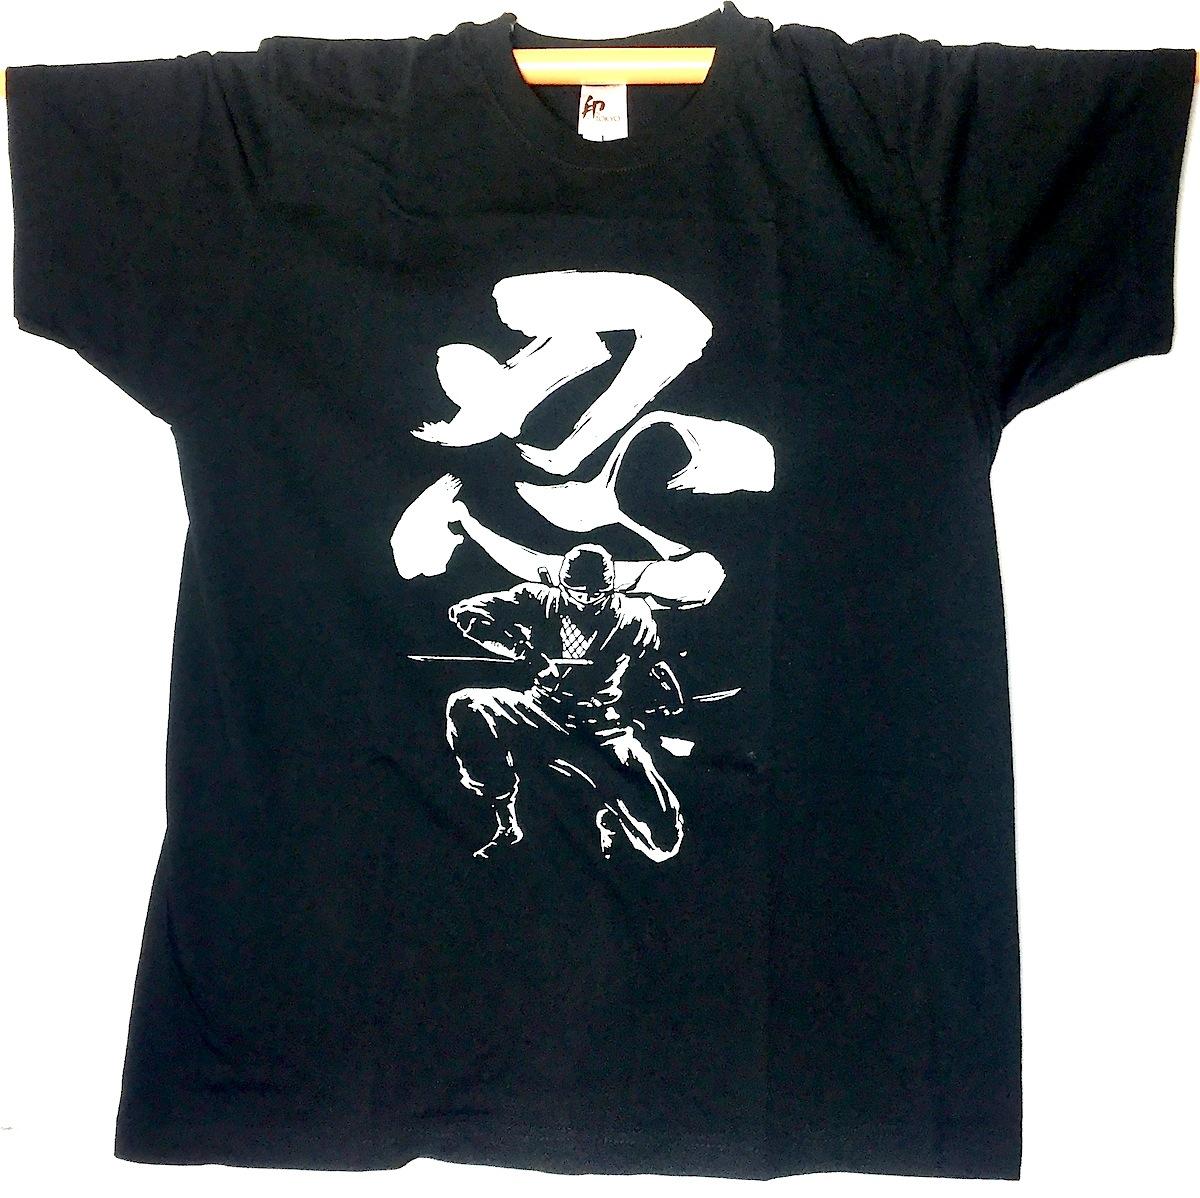 Ninja japanese T-shirt